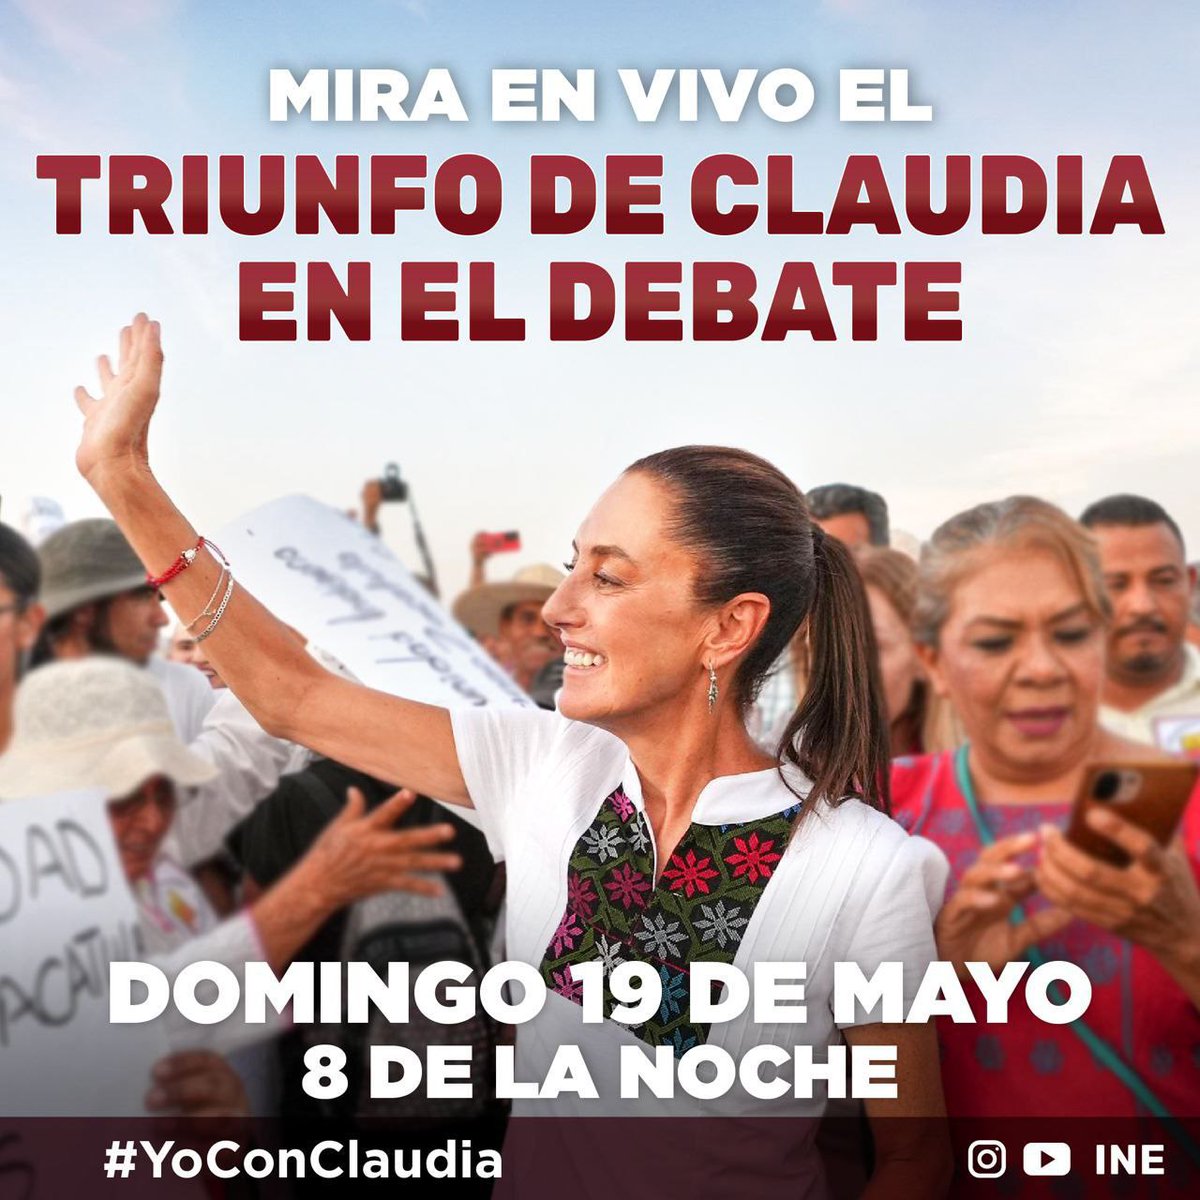 Vamos a ver ganar a @Claudiashein en el debate y el 2 de junio ella nos verá refrendar el triunfo en las urnas 🗳 youtube.com/live/I7Xk47gz5… #HoyGanaClaudia #ClaudiaPresidentaDeMéxico #ClaudiaGanará3erDebate #DebateIne